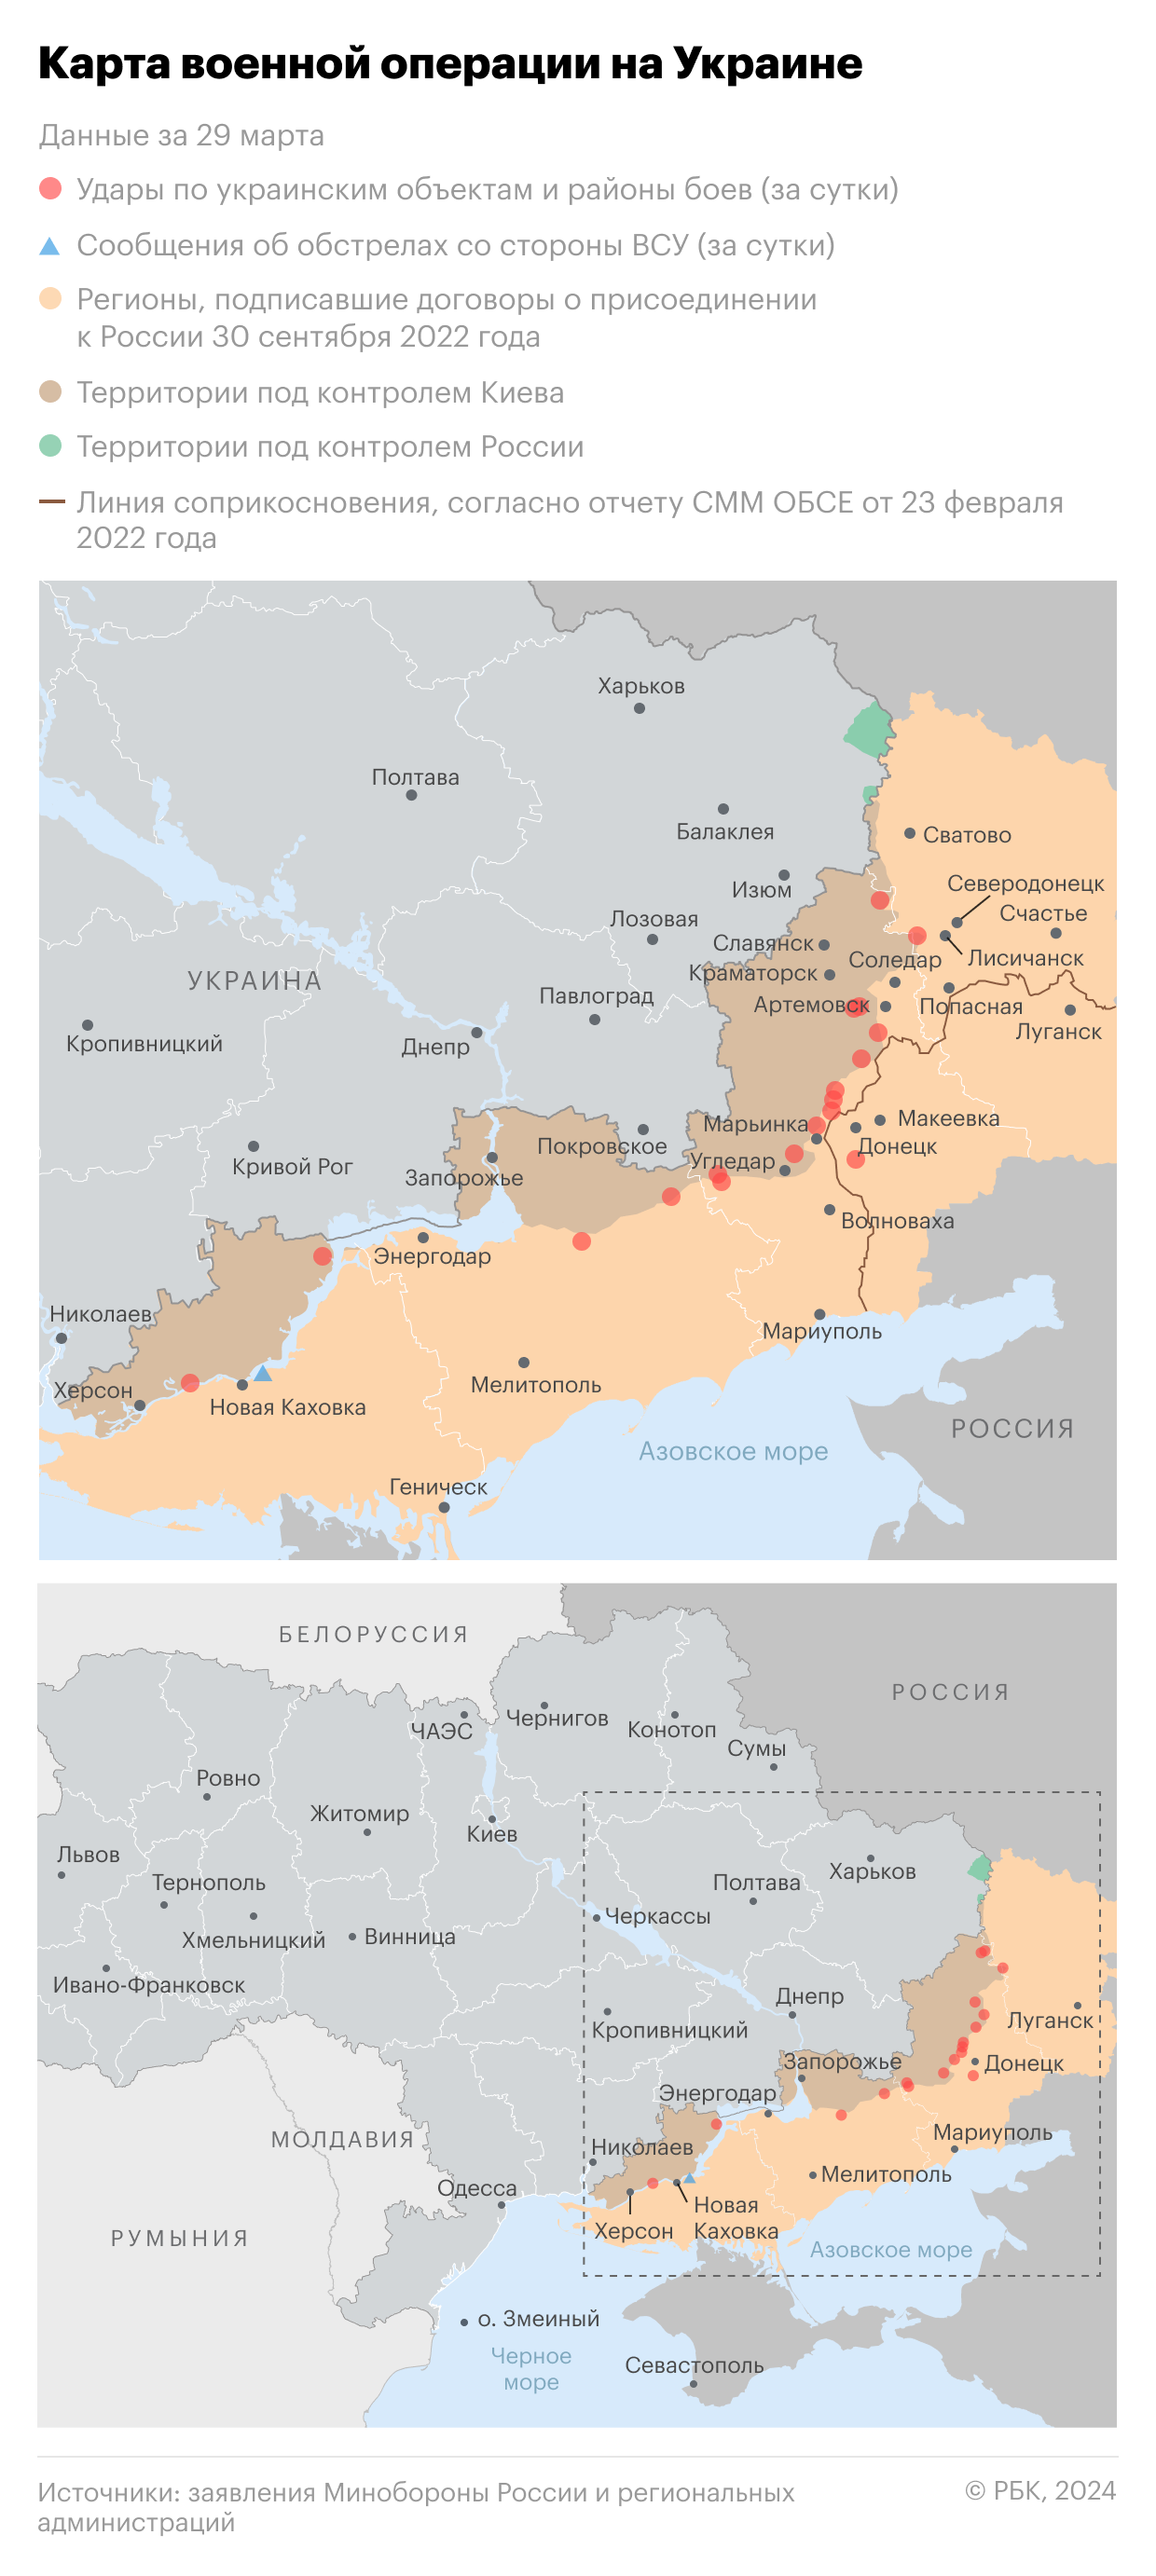 Военная операция на Украине. Карта на 26 марта